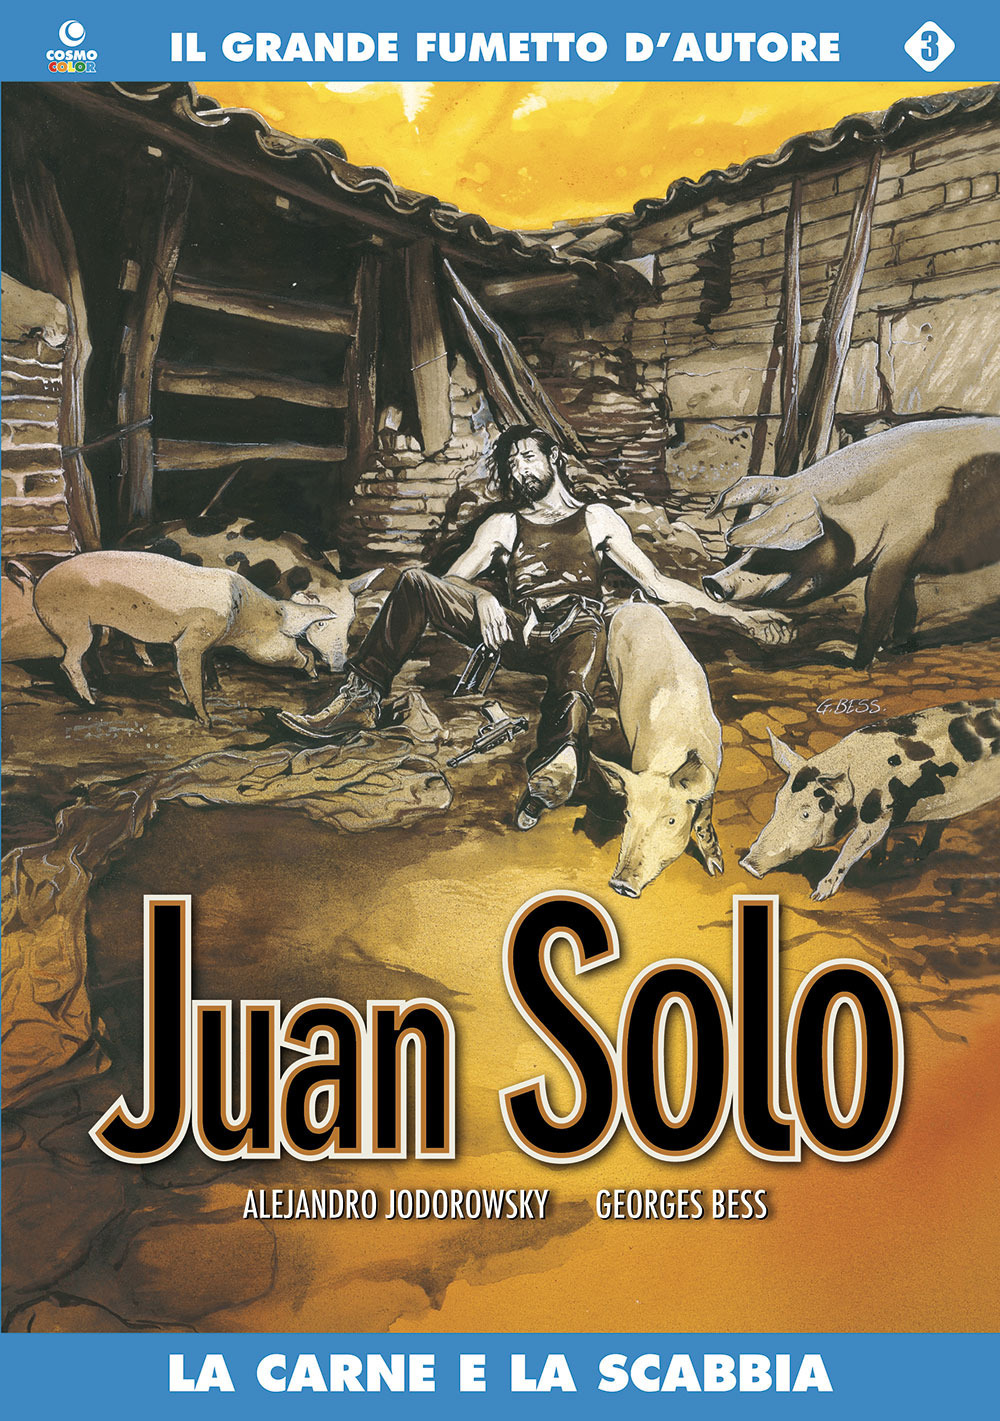 La carne e la scabbia. Juan Solo. Vol. 3